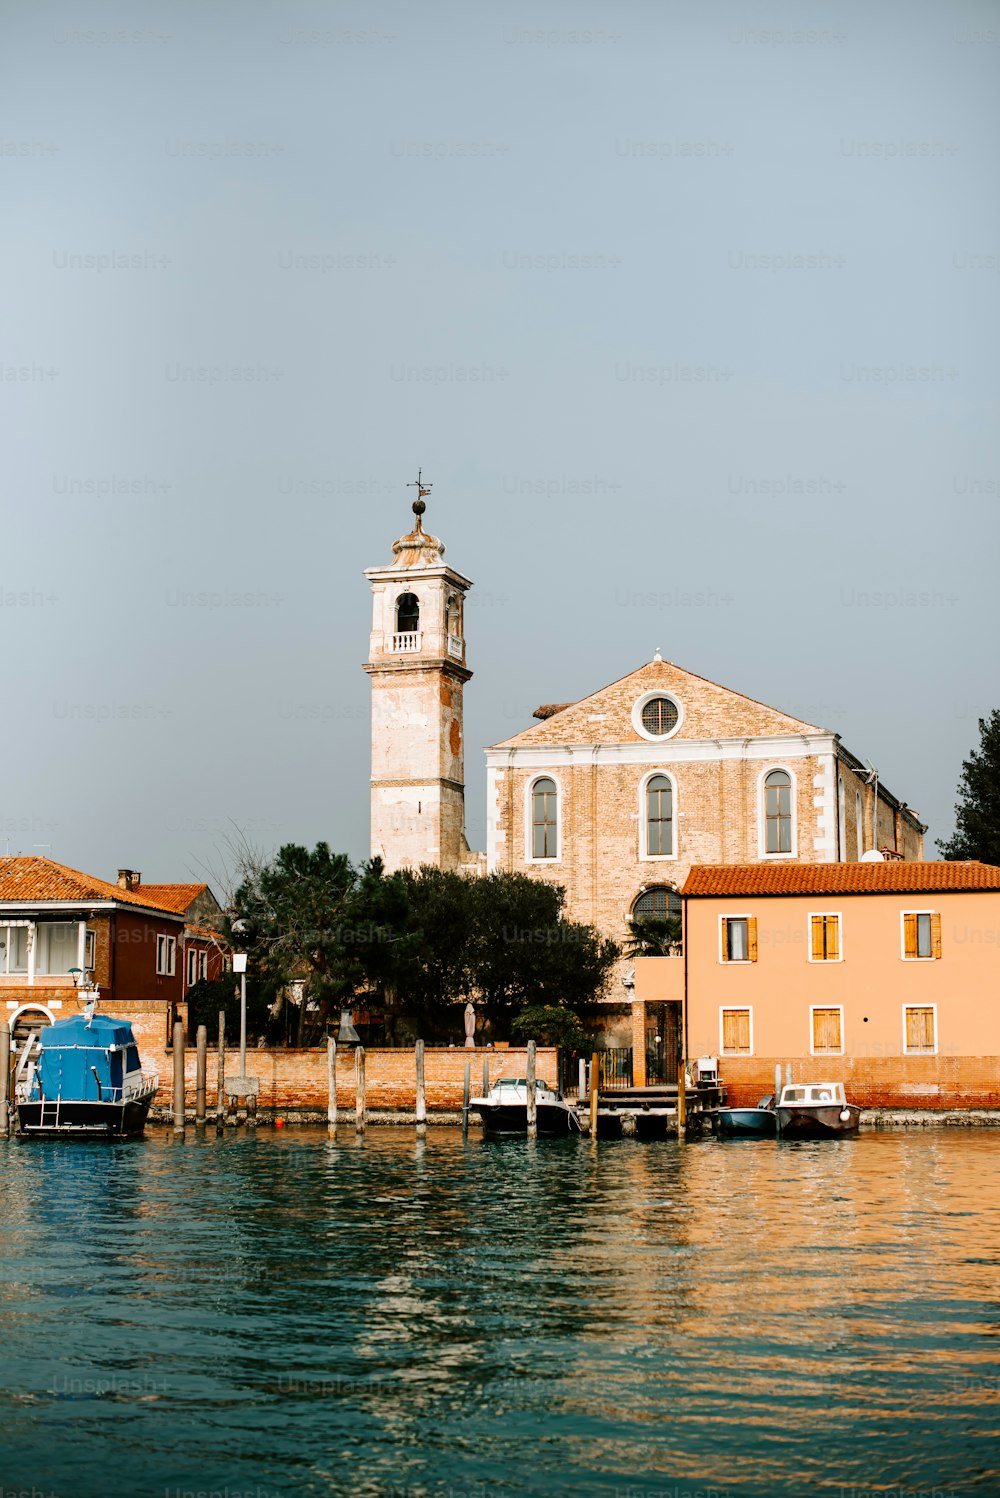 Eine Kirche am Ufer eines Gewässers